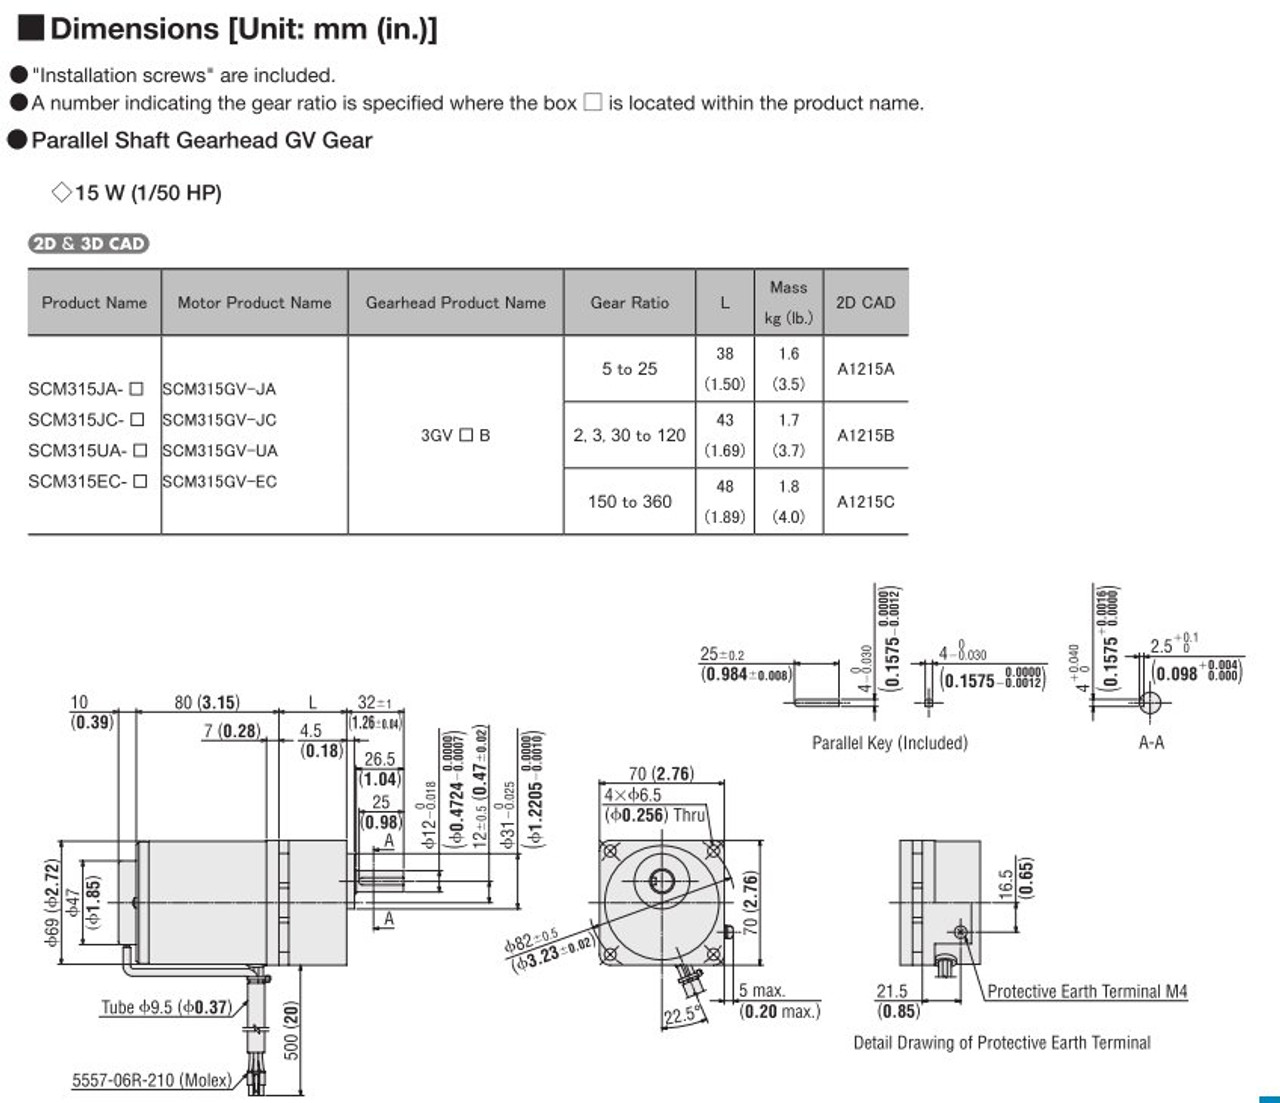 SCM315EC-150 / DSCD15EC - Dimensions